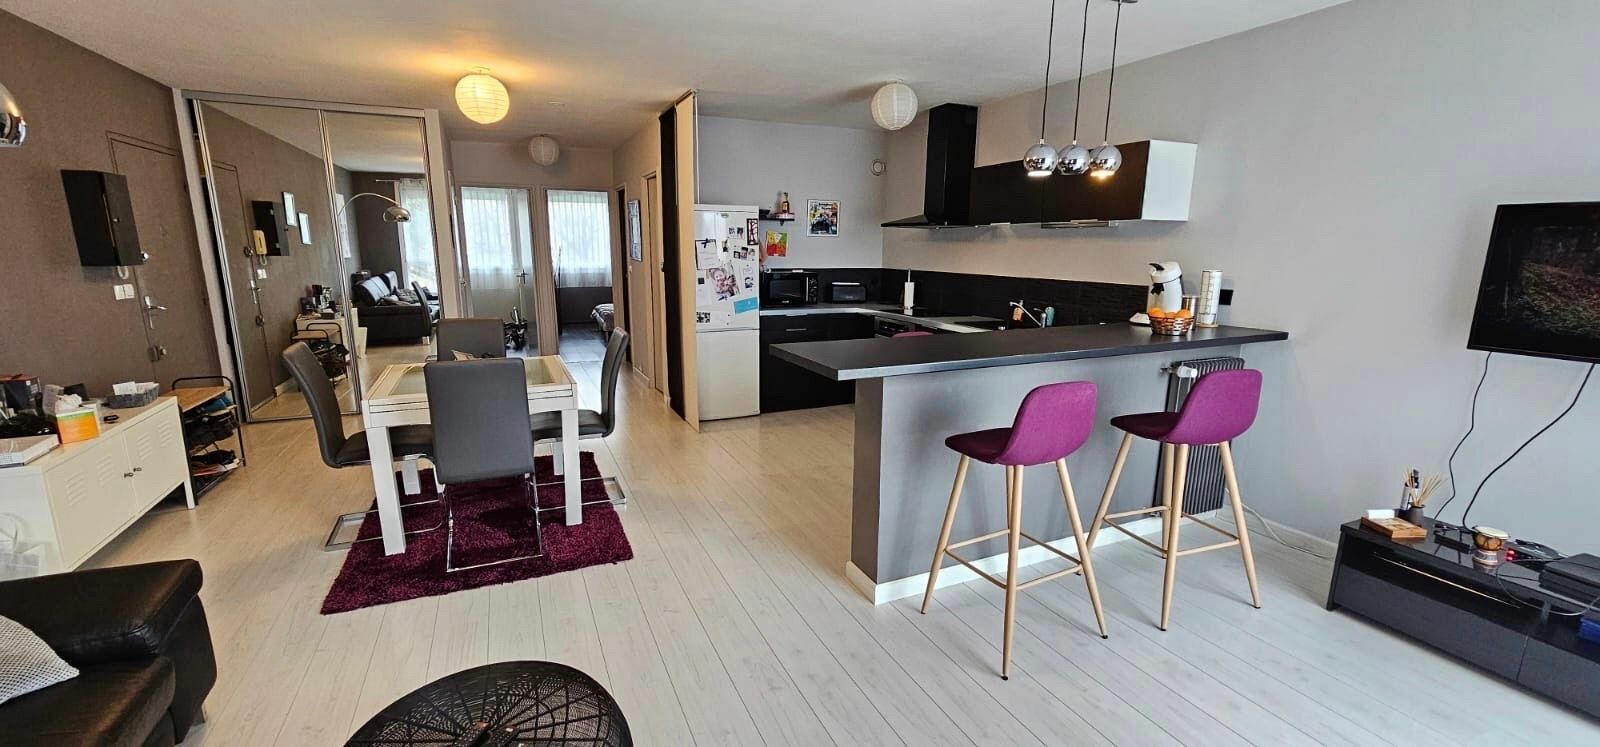 Appartement à vendre 3 68.87m2 à Poitiers vignette-2